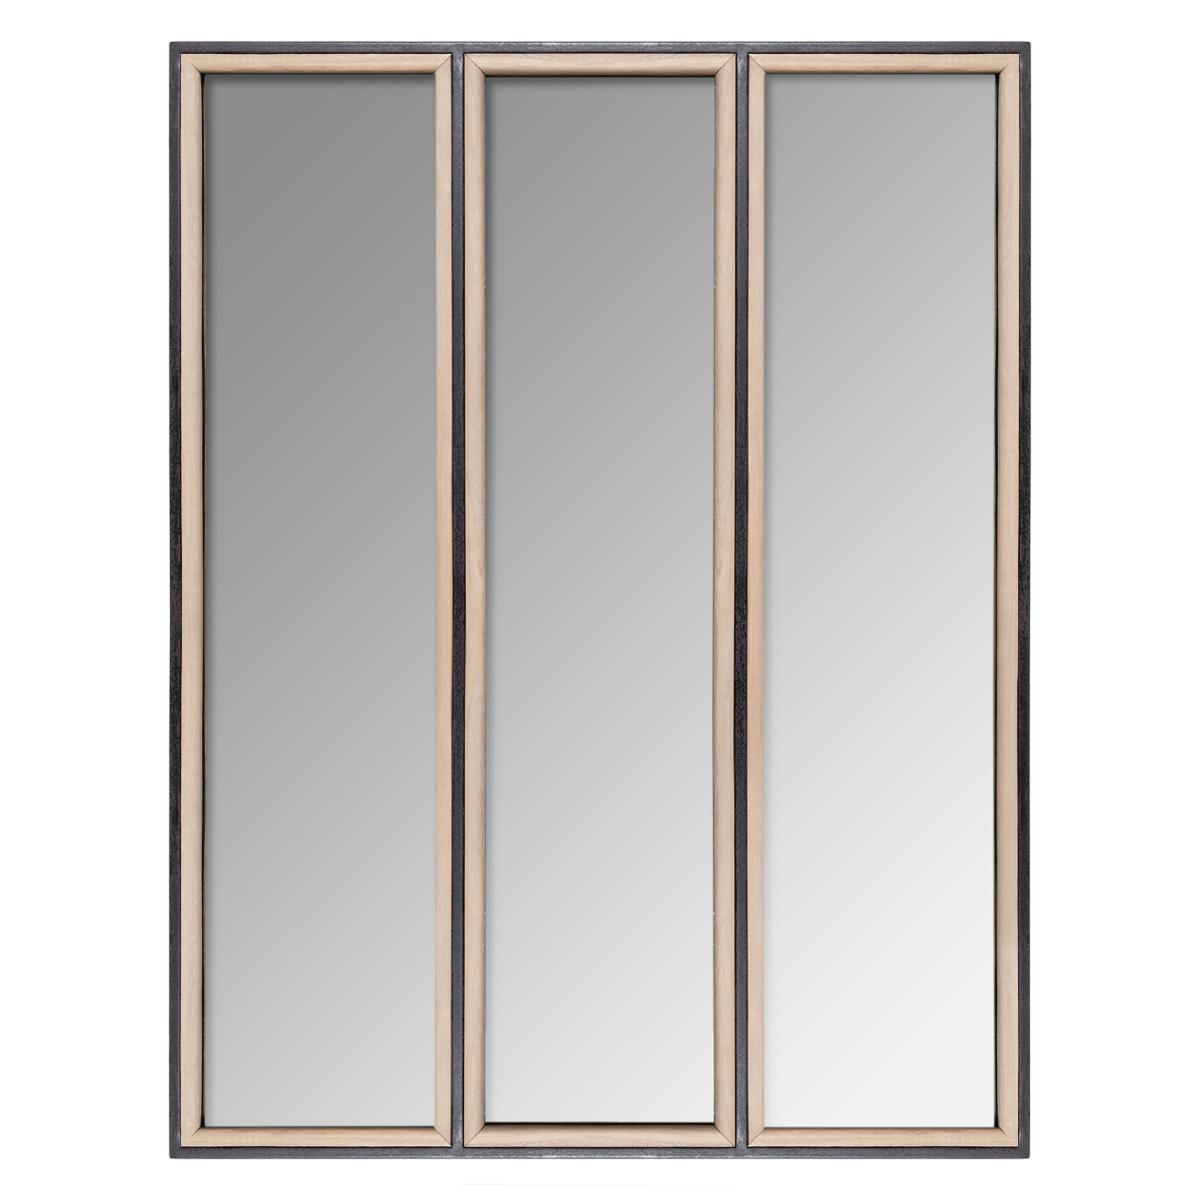 Miroir bois et métal Tina - 70 x 90 cm - Marron, transparent, gris